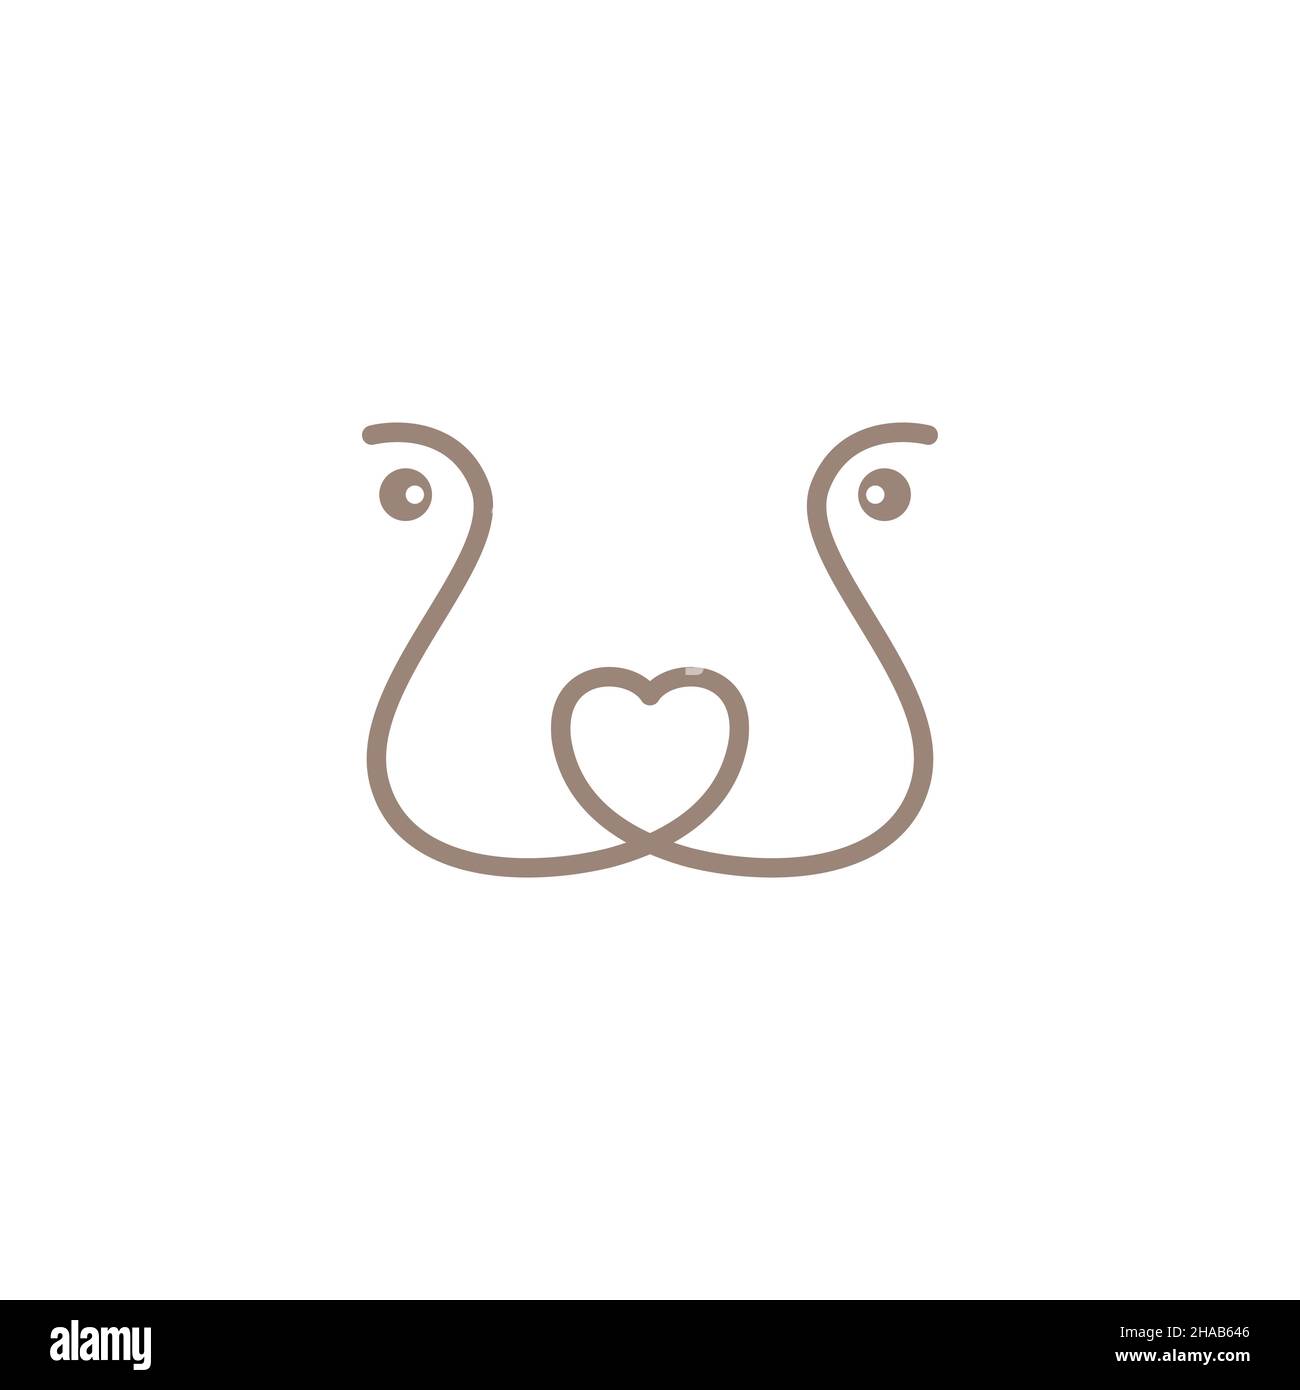 continuous line Otters logo symbol icon vector graphic design illustration idea creative Stock Vector